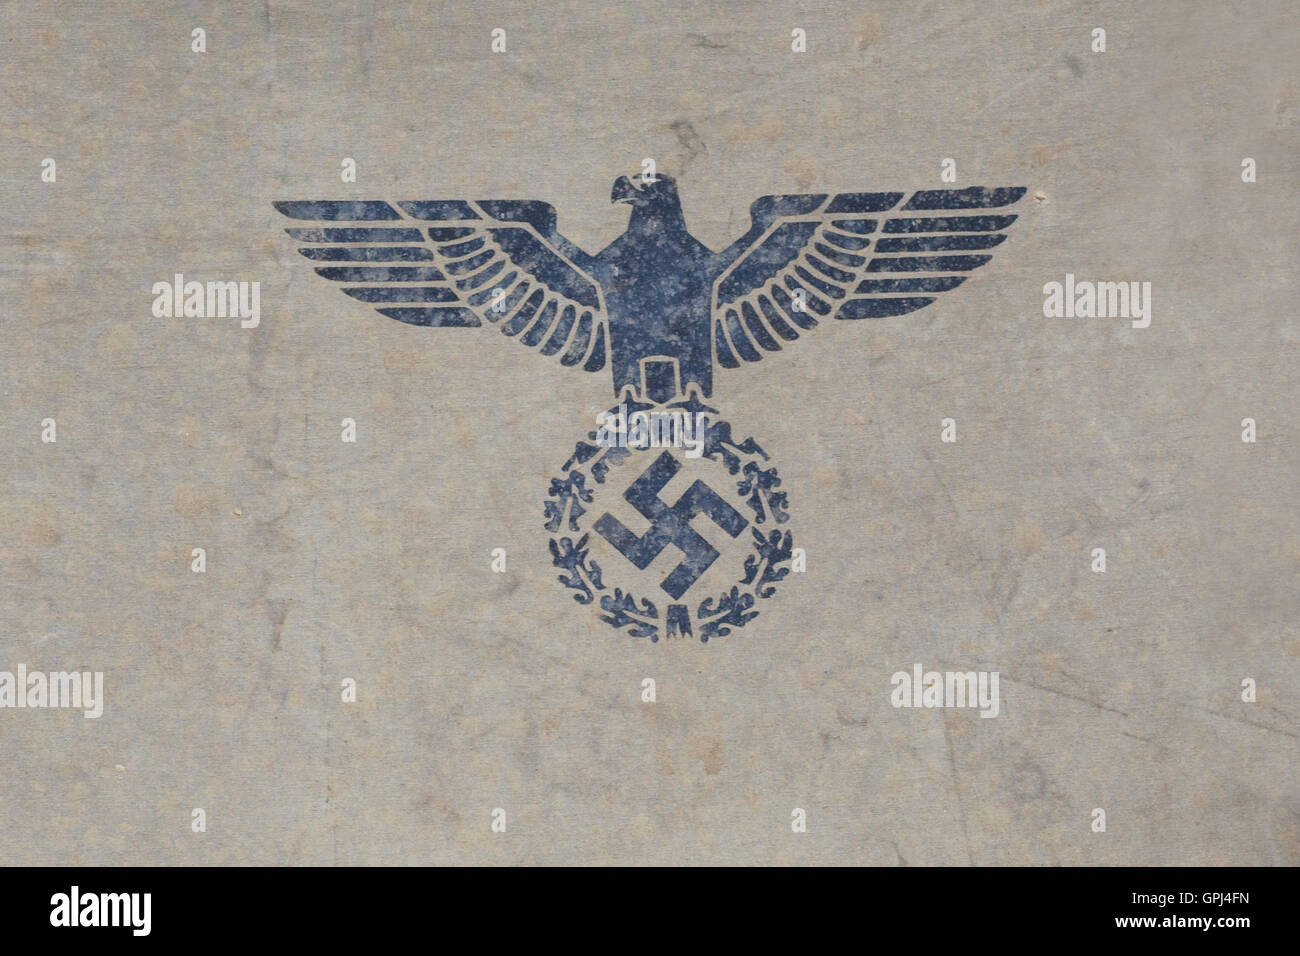 Reichsadler de l'Allemagne nazie, le 'Aigle' sur une tente allemande Banque D'Images